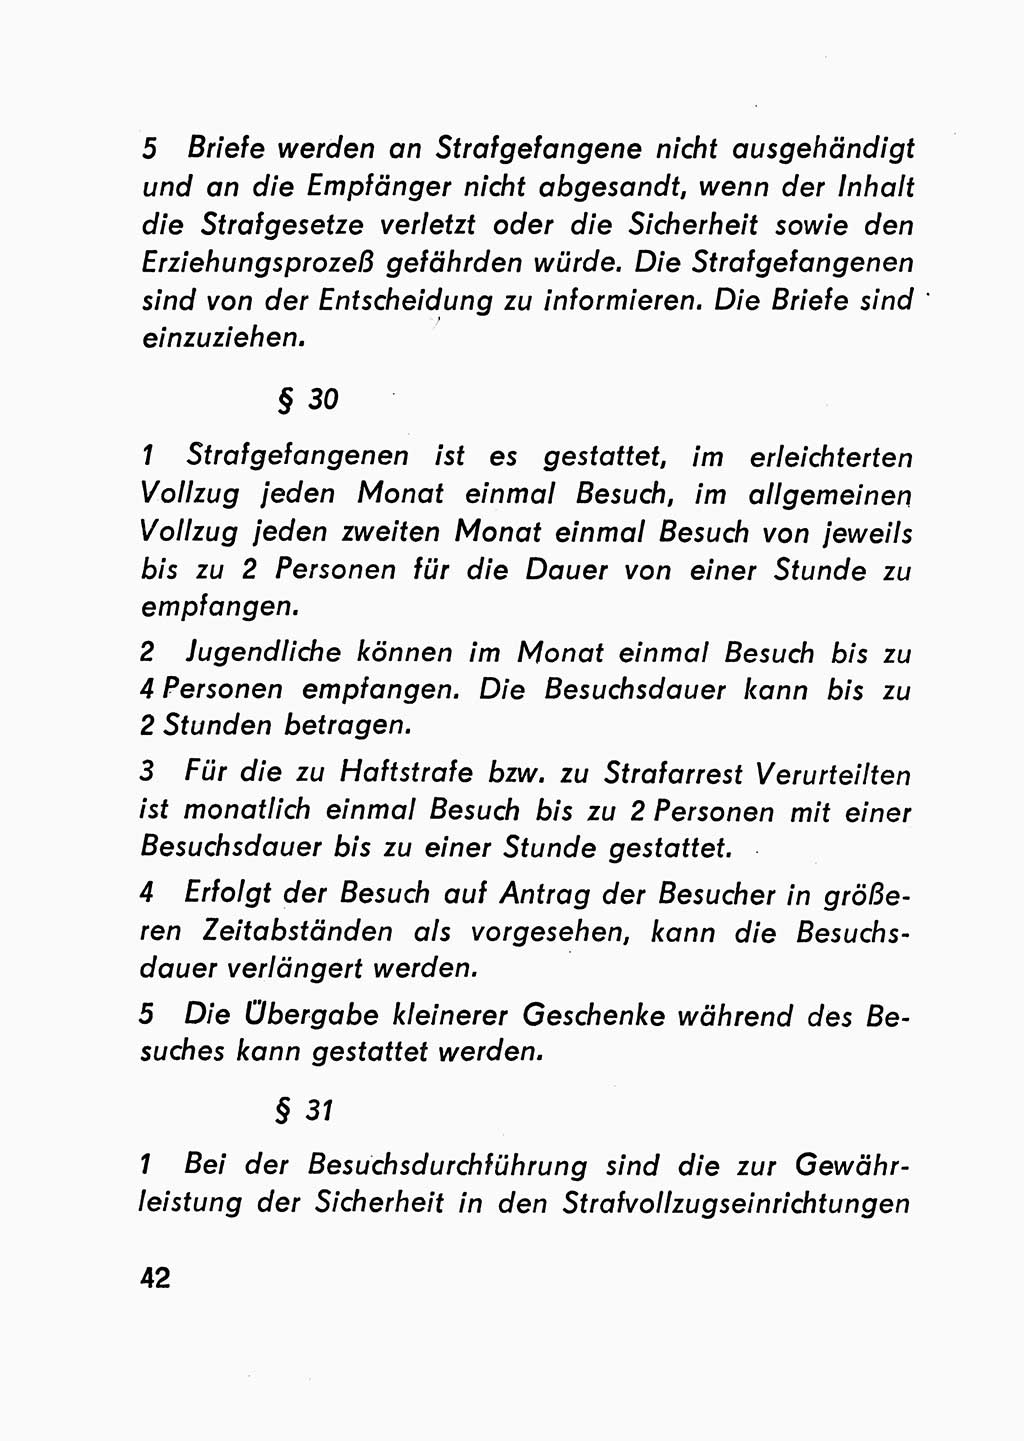 Gesetz über den Vollzug der Strafen mit Freiheitsentzug (Strafvollzugsgesetz) - StVG - [Deutsche Demokratische Republik (DDR)] 1977, Seite 42 (StVG DDR 1977, S. 42)